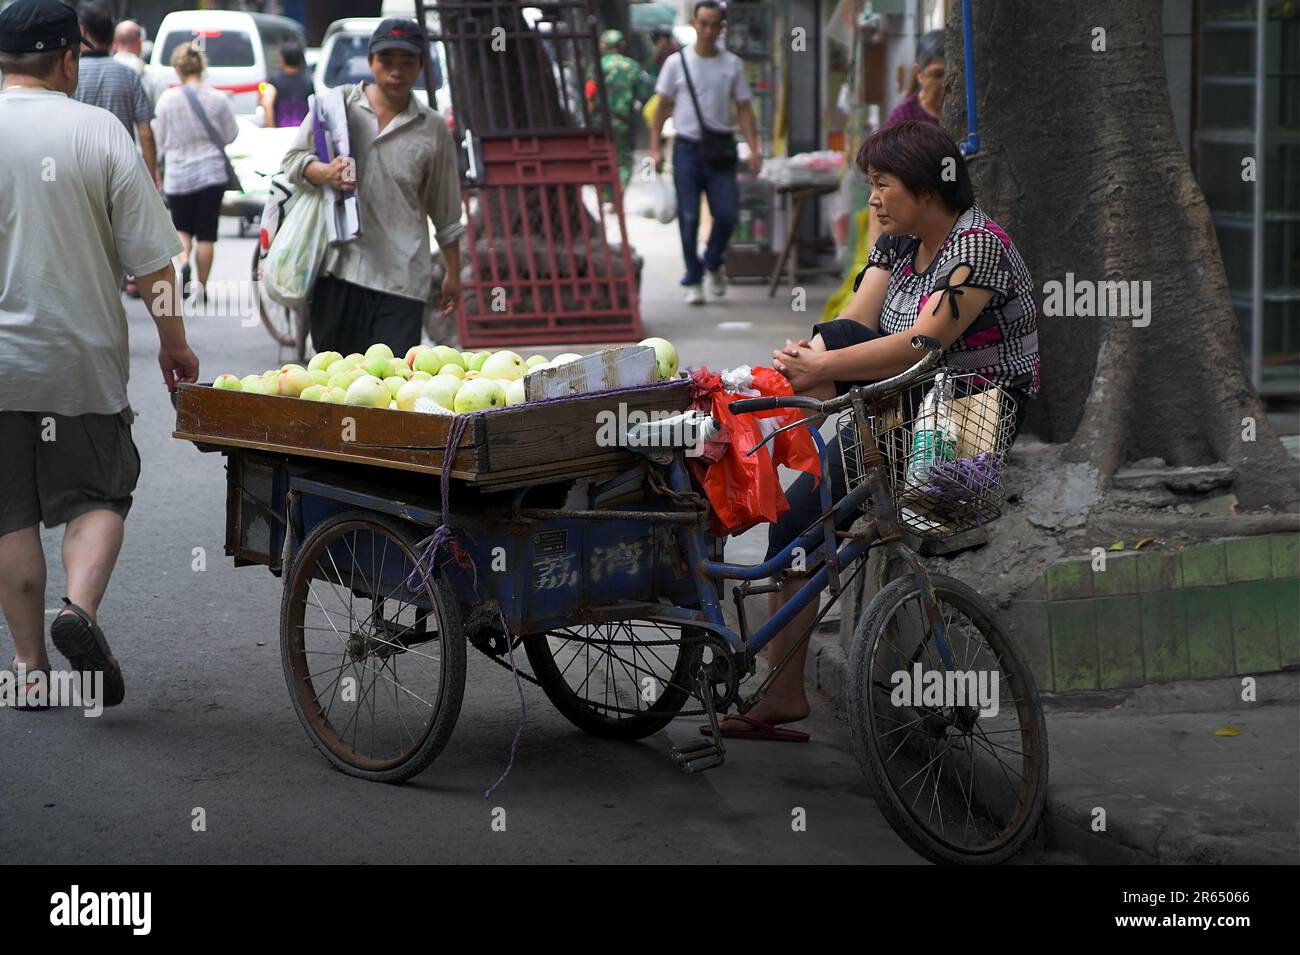 广州市 中國 Guangzhou, China; A street apple seller; A street vendor selling apples; Ein Apfelverkäufer auf der Straße; Ein Straßen-Apfelverkäufer 街頭賣蘋果的人 Stock Photo